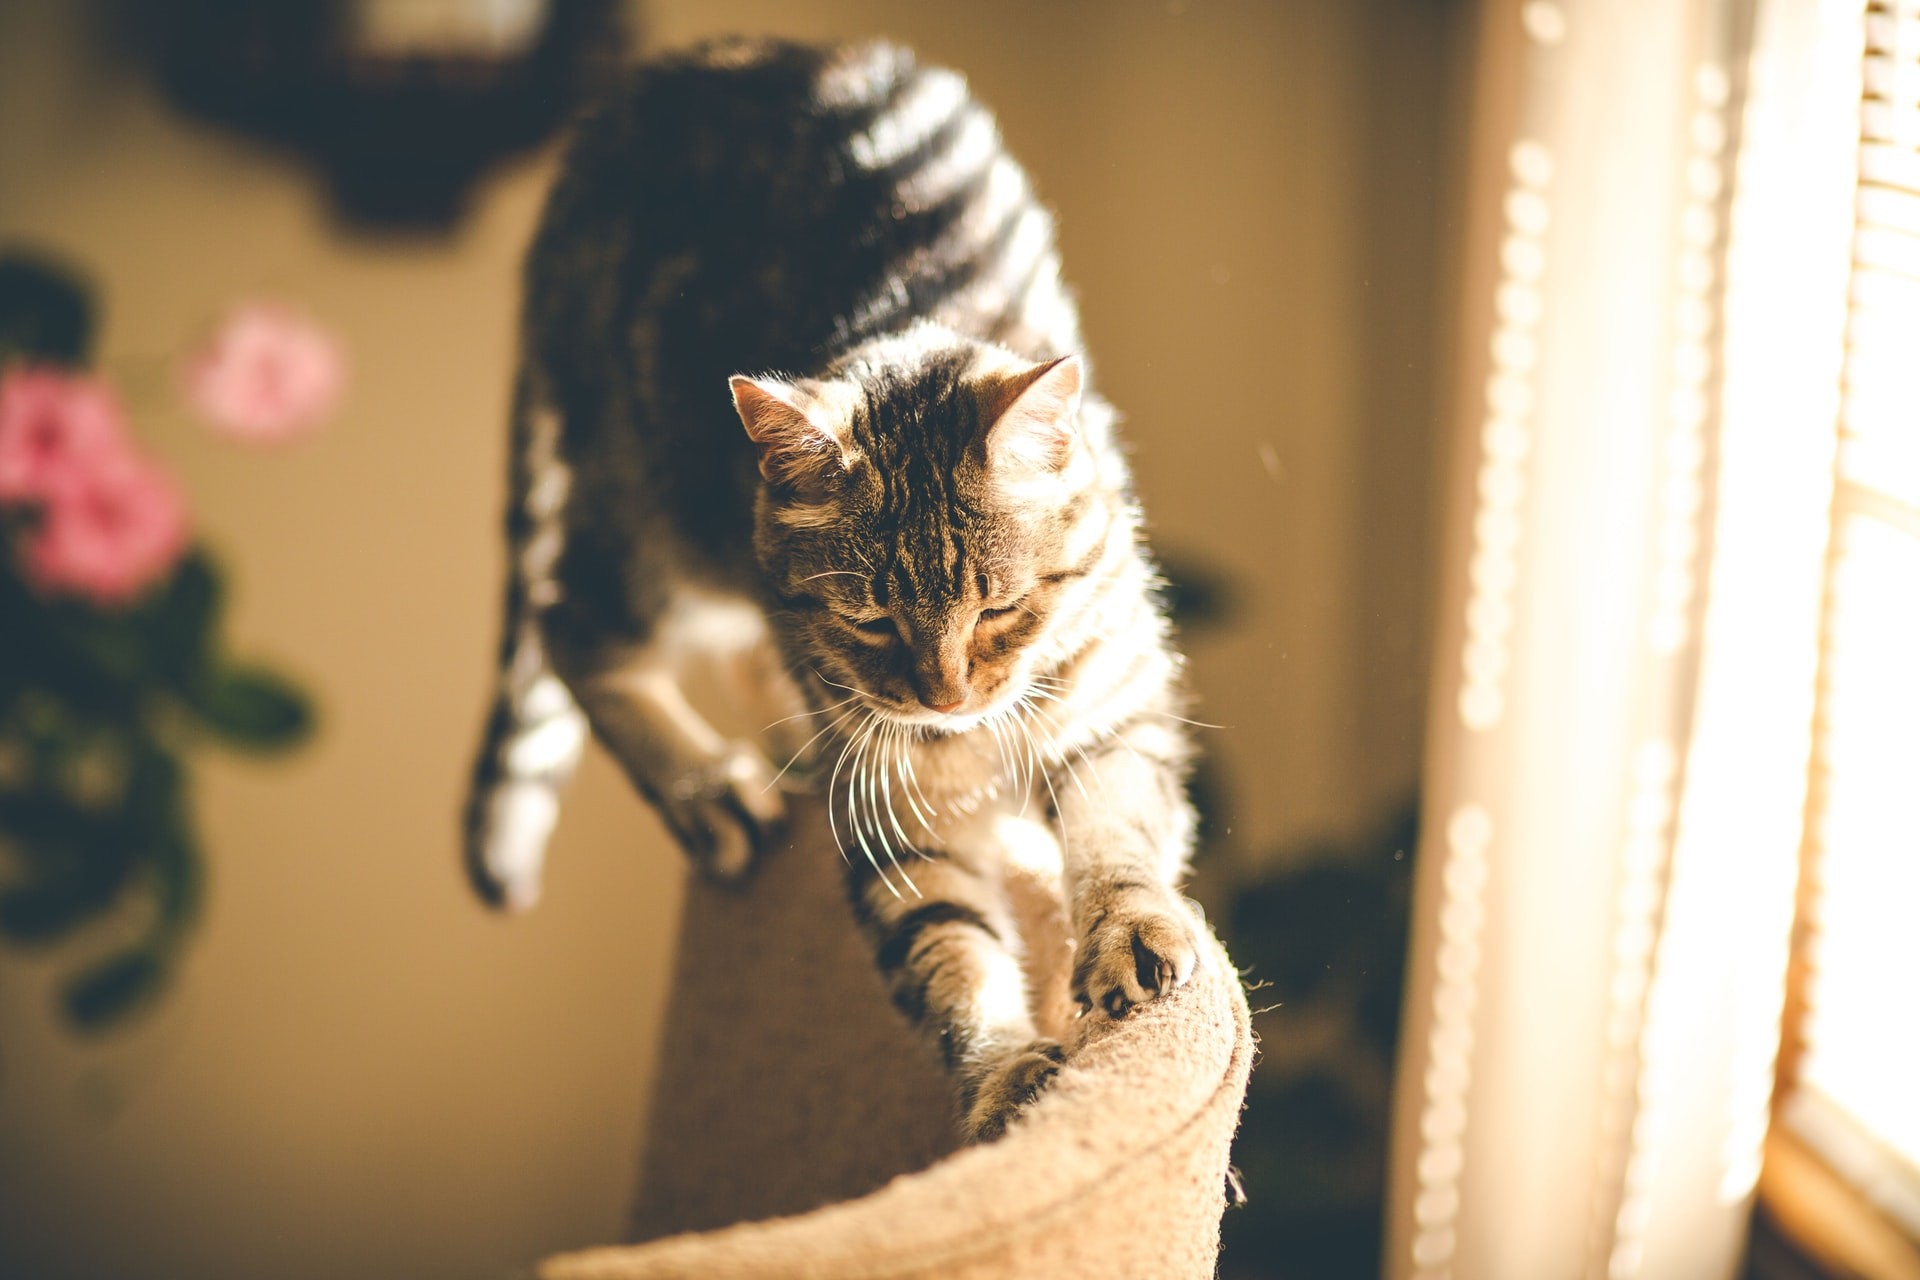 Afinal, por que gatos gostam de amassar superfícies com as patas? (Foto: Kaiwen Sun/Unsplash)